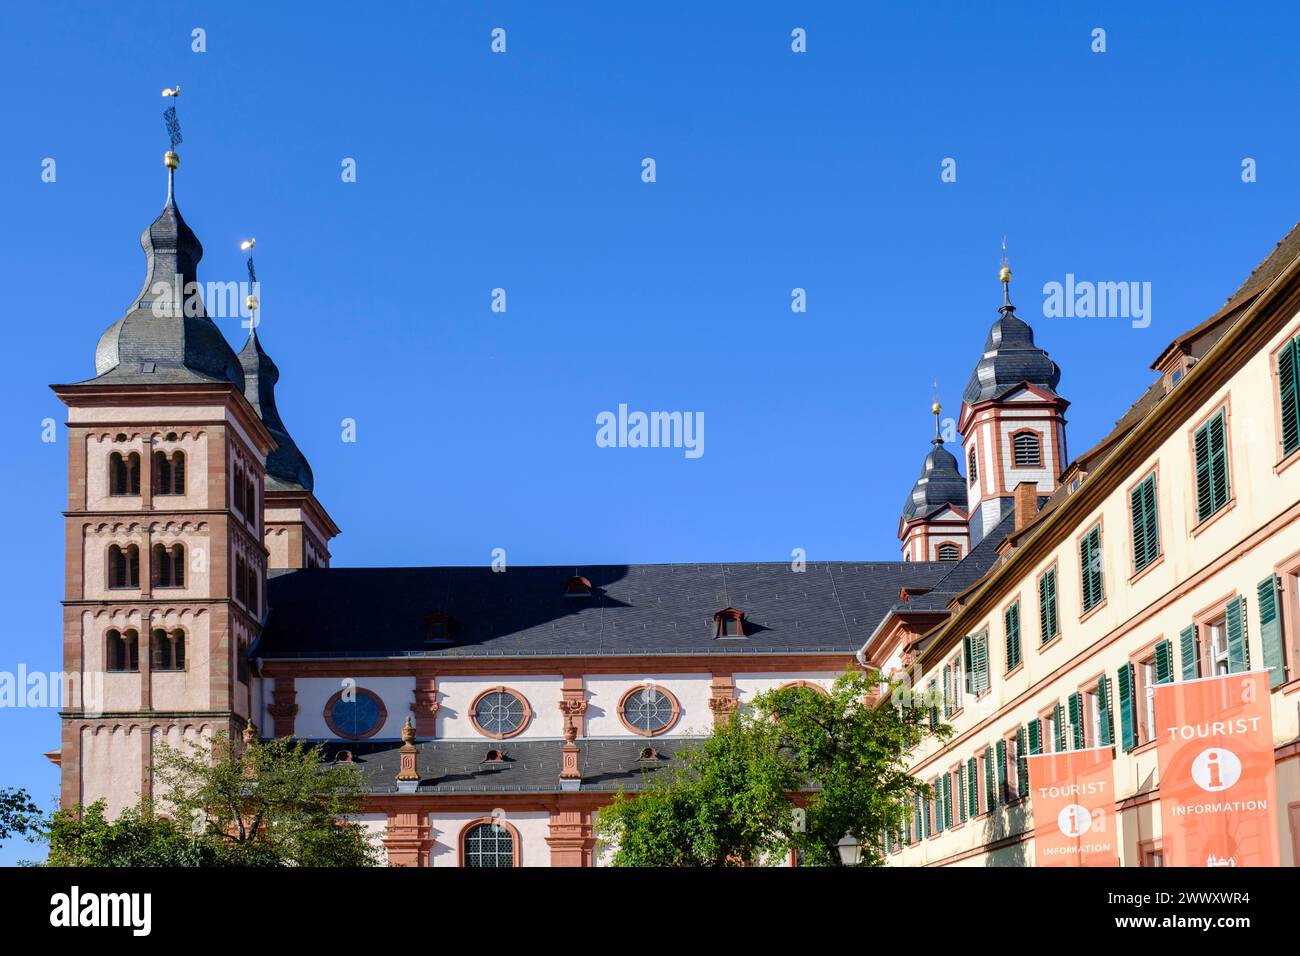 Monastery church, abbey church, Amorbach Monastery, Mainfranken, Lower Franconia, Franconia, Bavaria, Germany Stock Photo